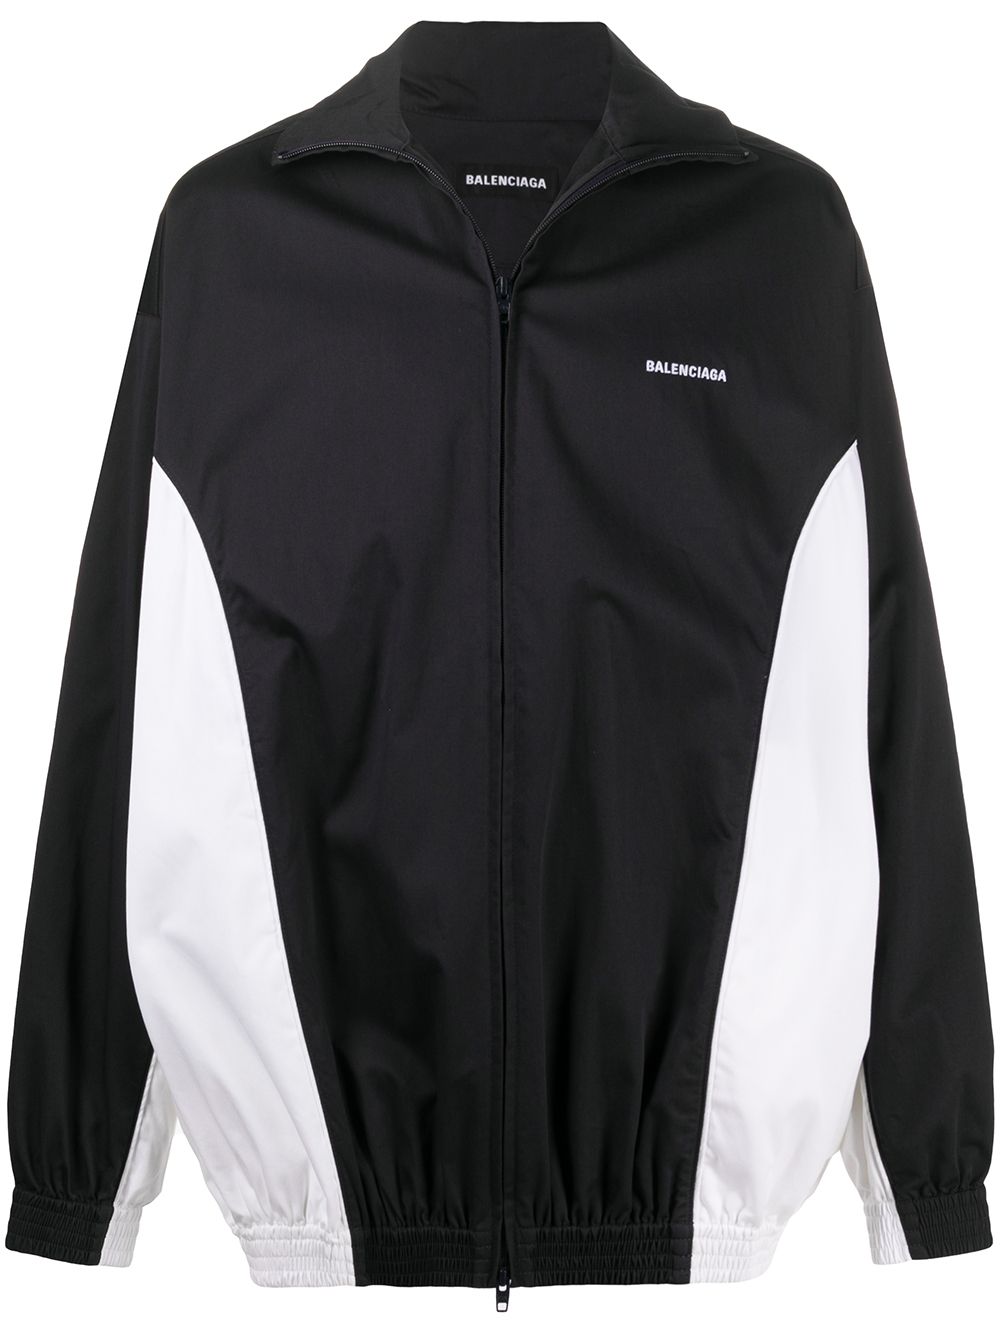 Mirror Balenciaga Zipup Jacket in Black  Balenciaga US